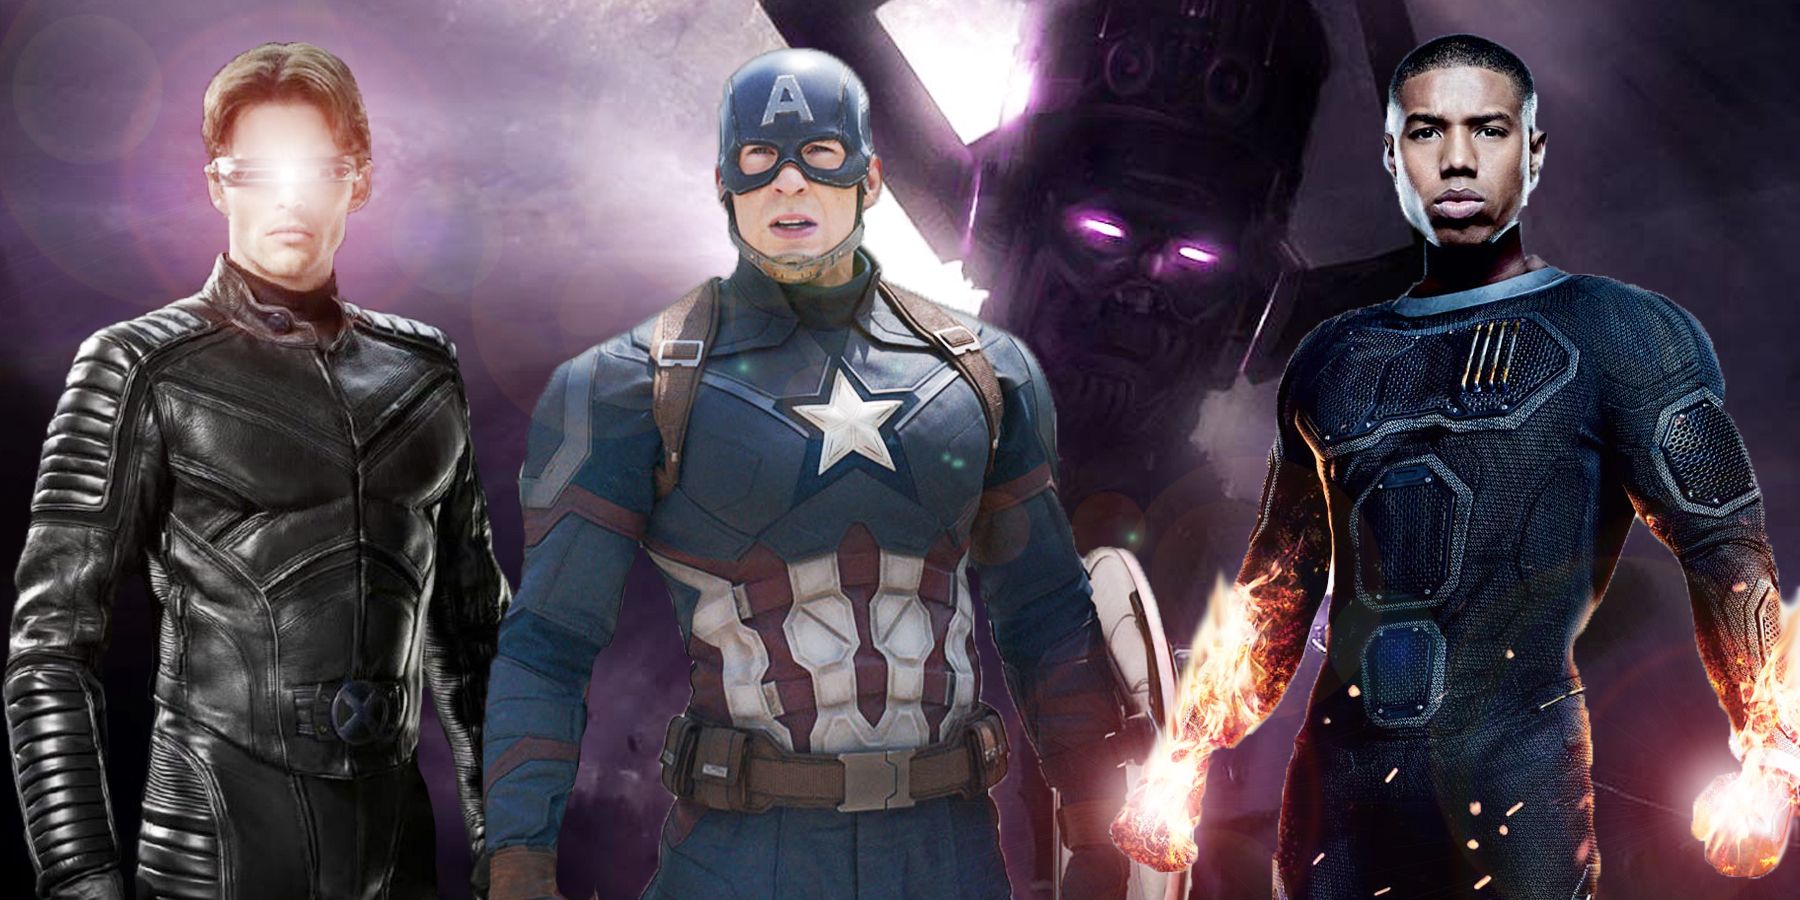 x-men avengers fantastic four movie galactus